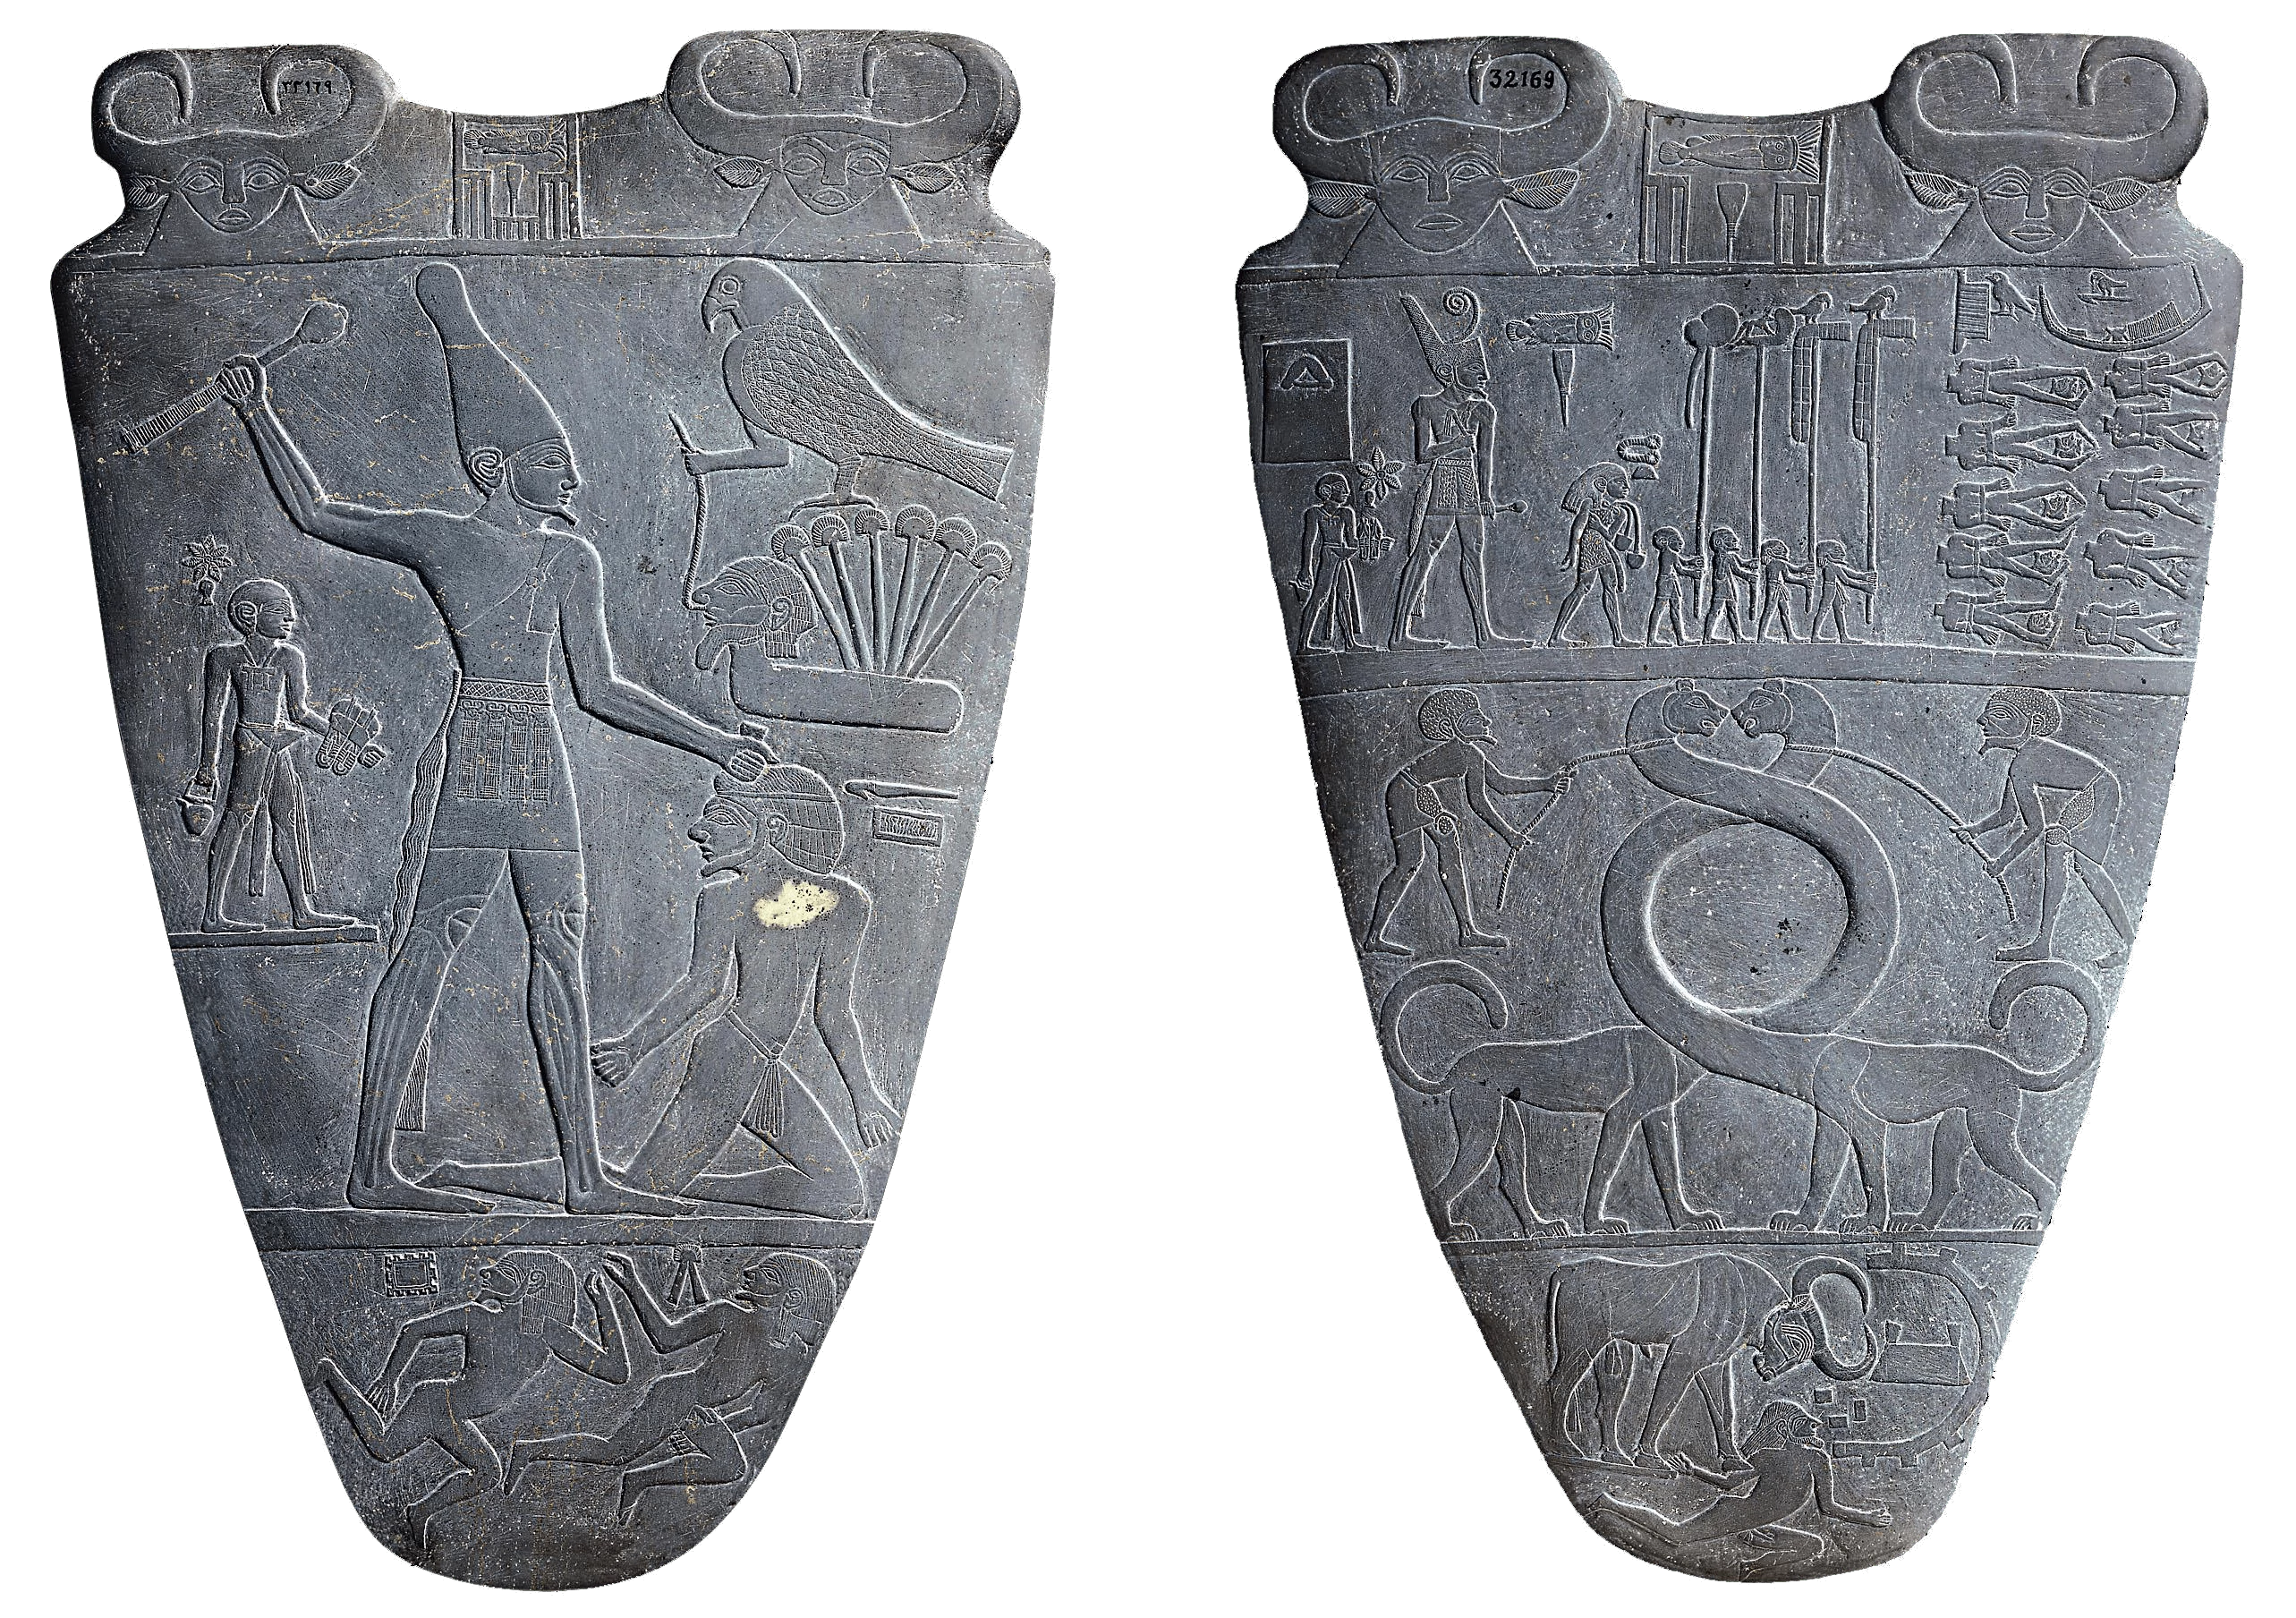 Palette of Narmer, Ancient Egypt